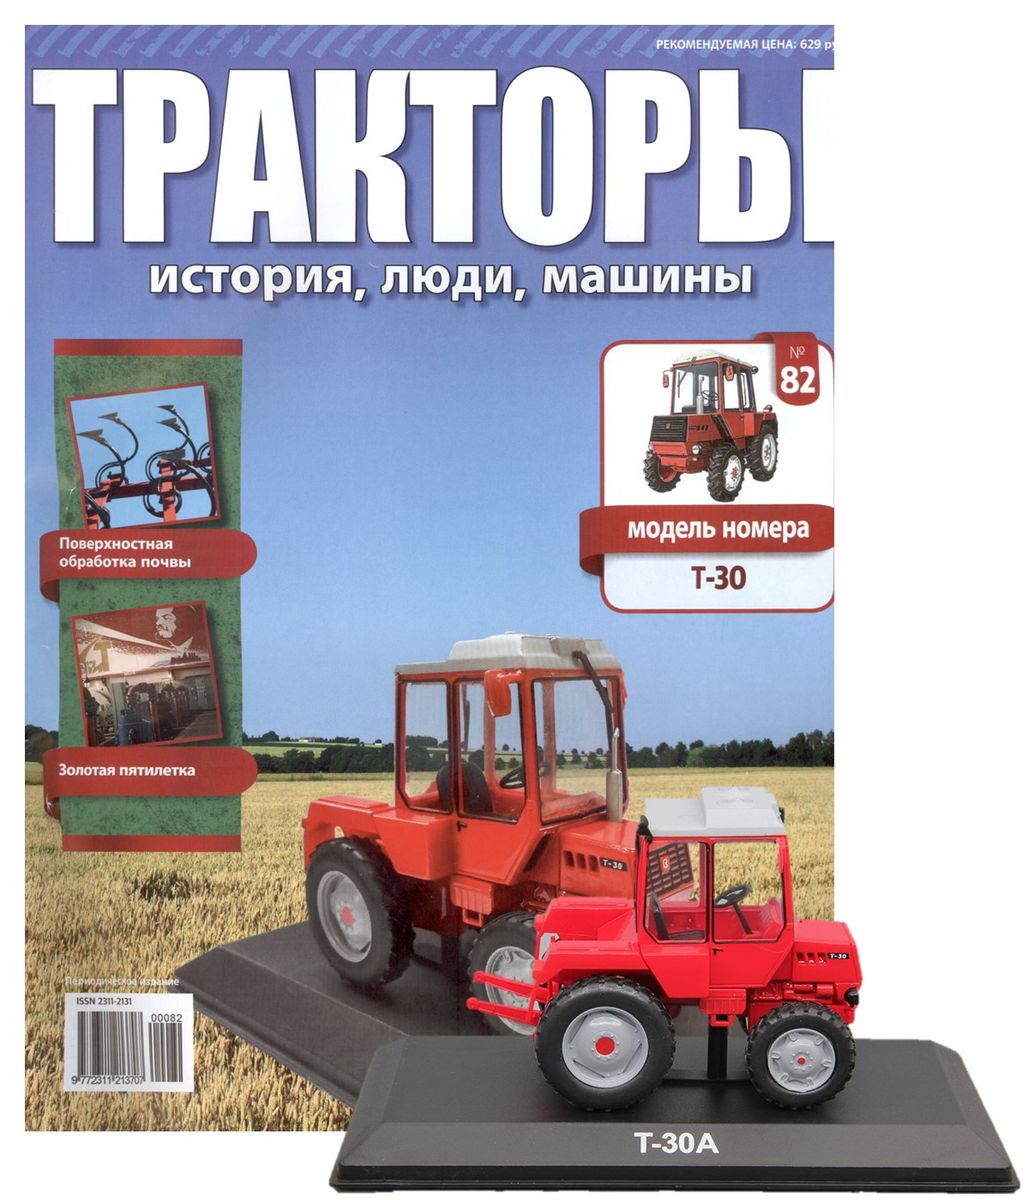 Журнал Тракторы №82. Трактор Т-30А